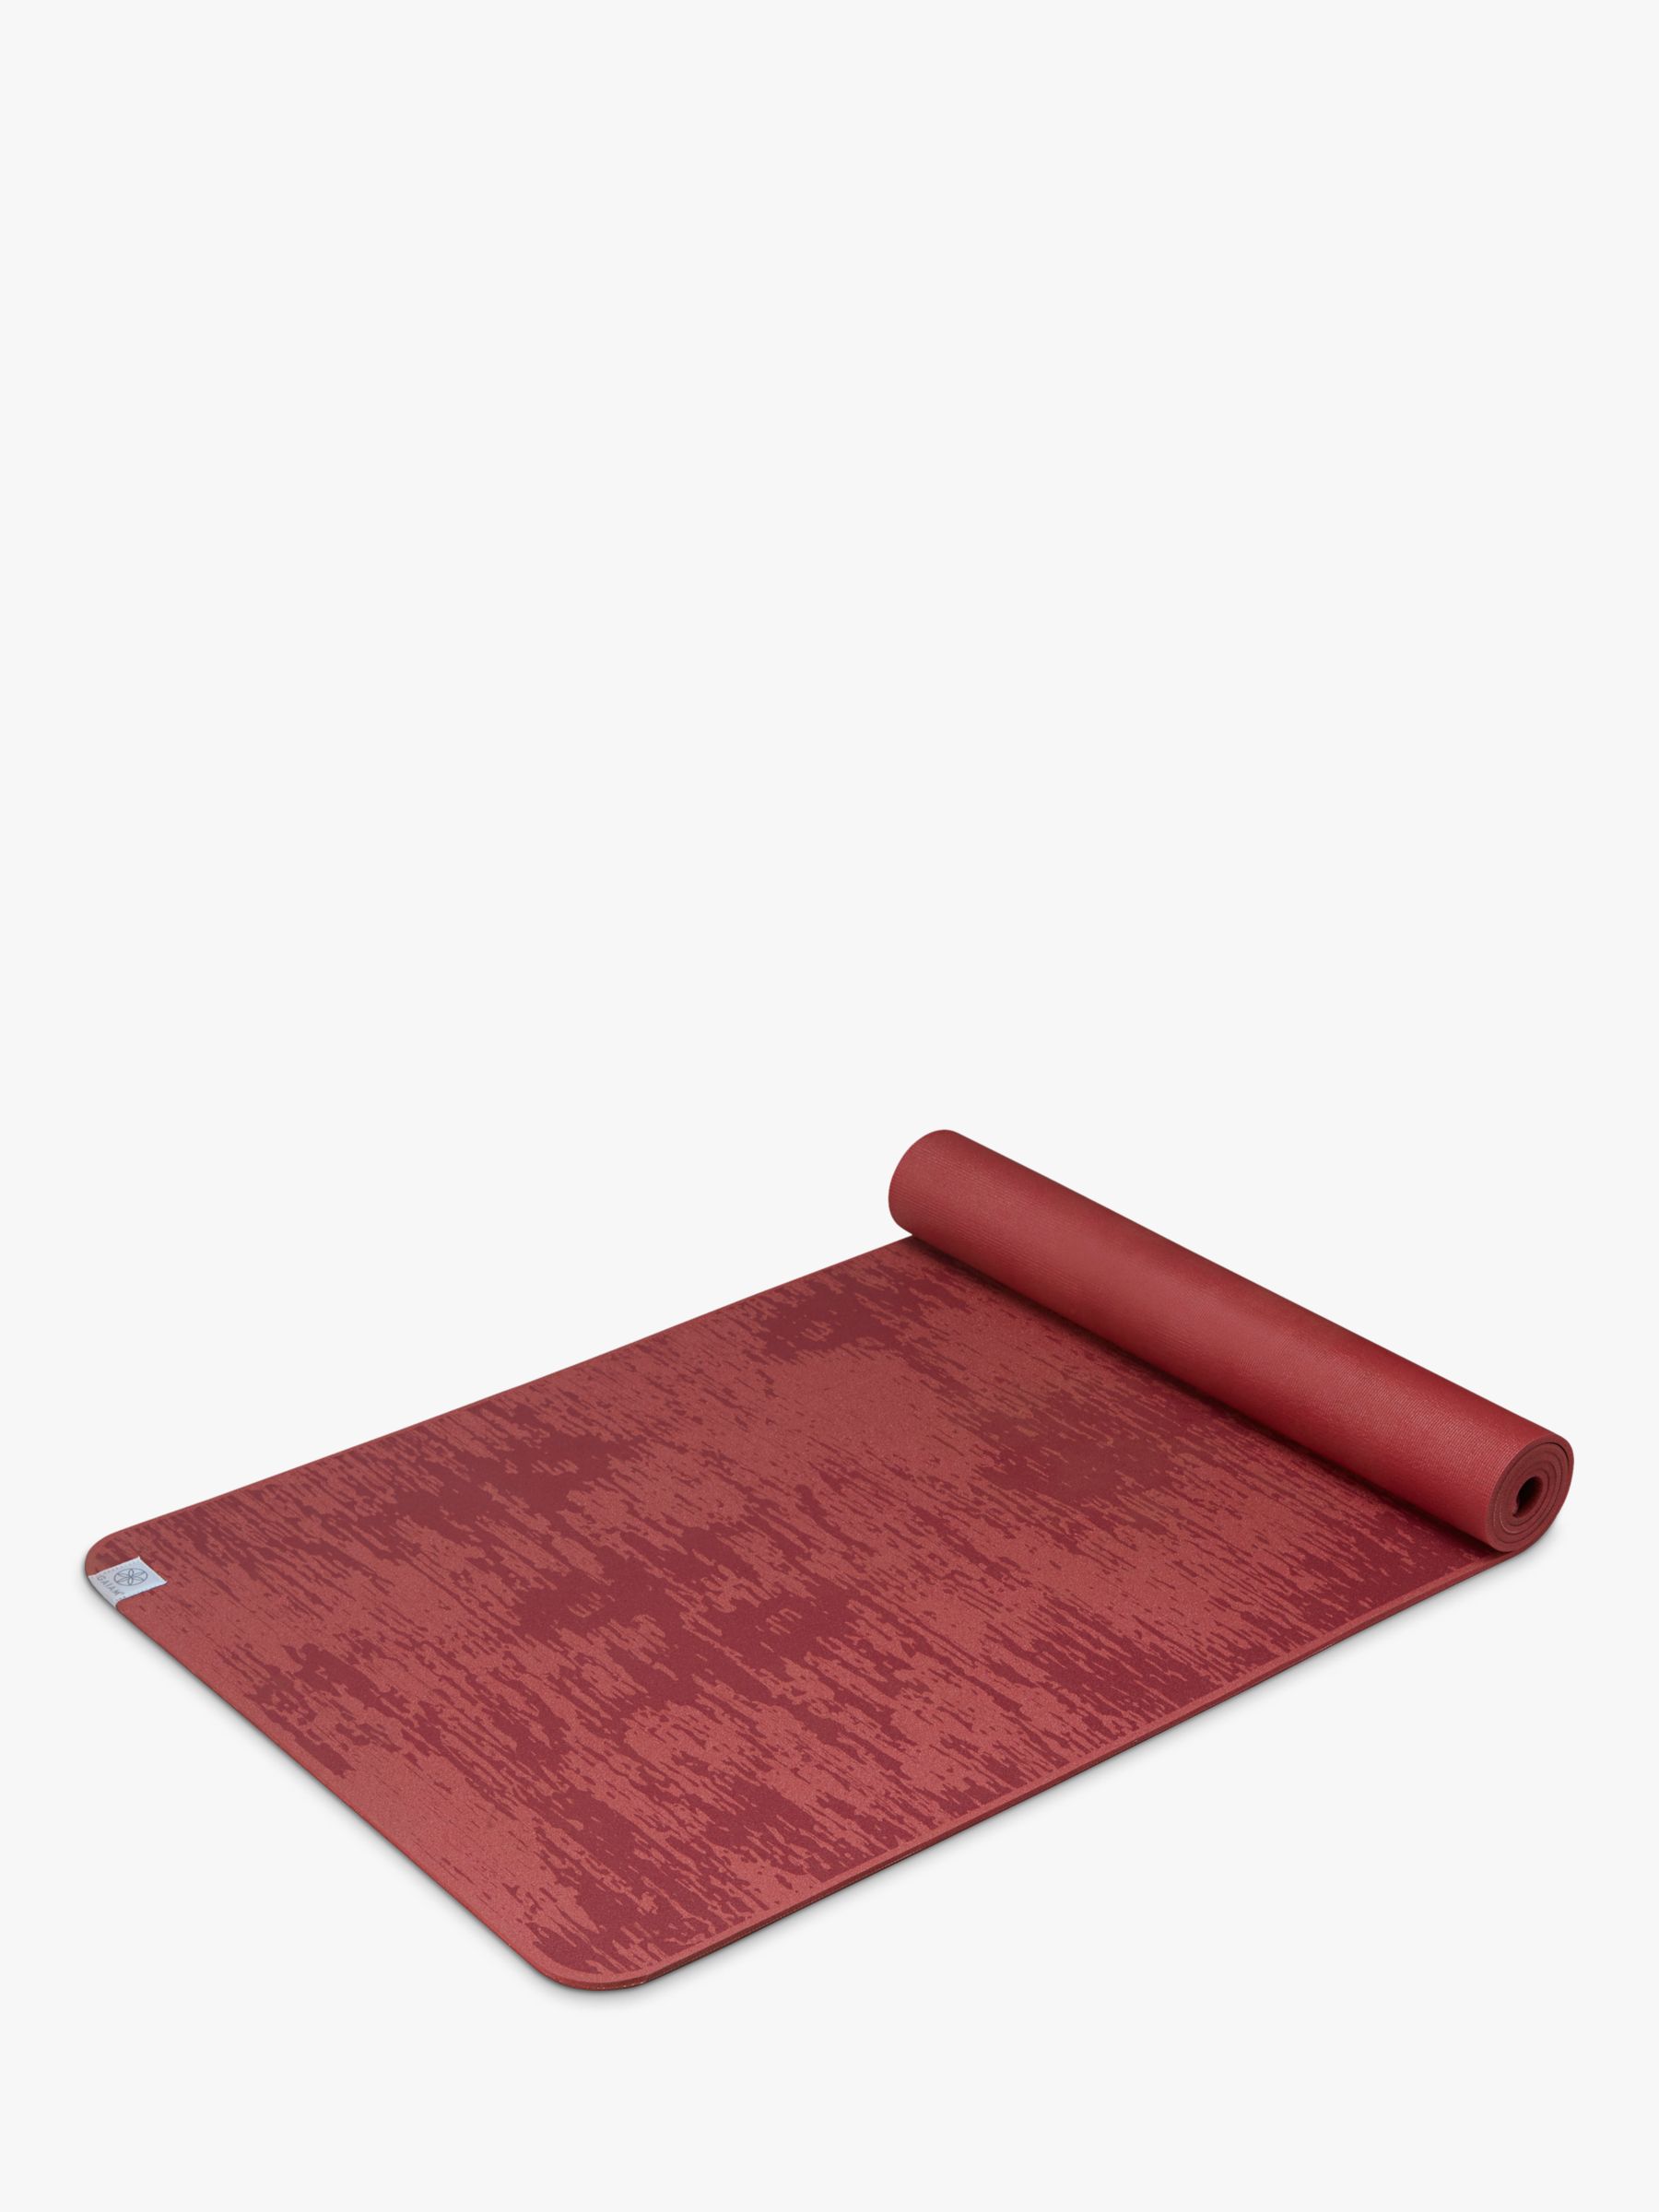 Gaiam Yoga Mat - Premium 6mm 